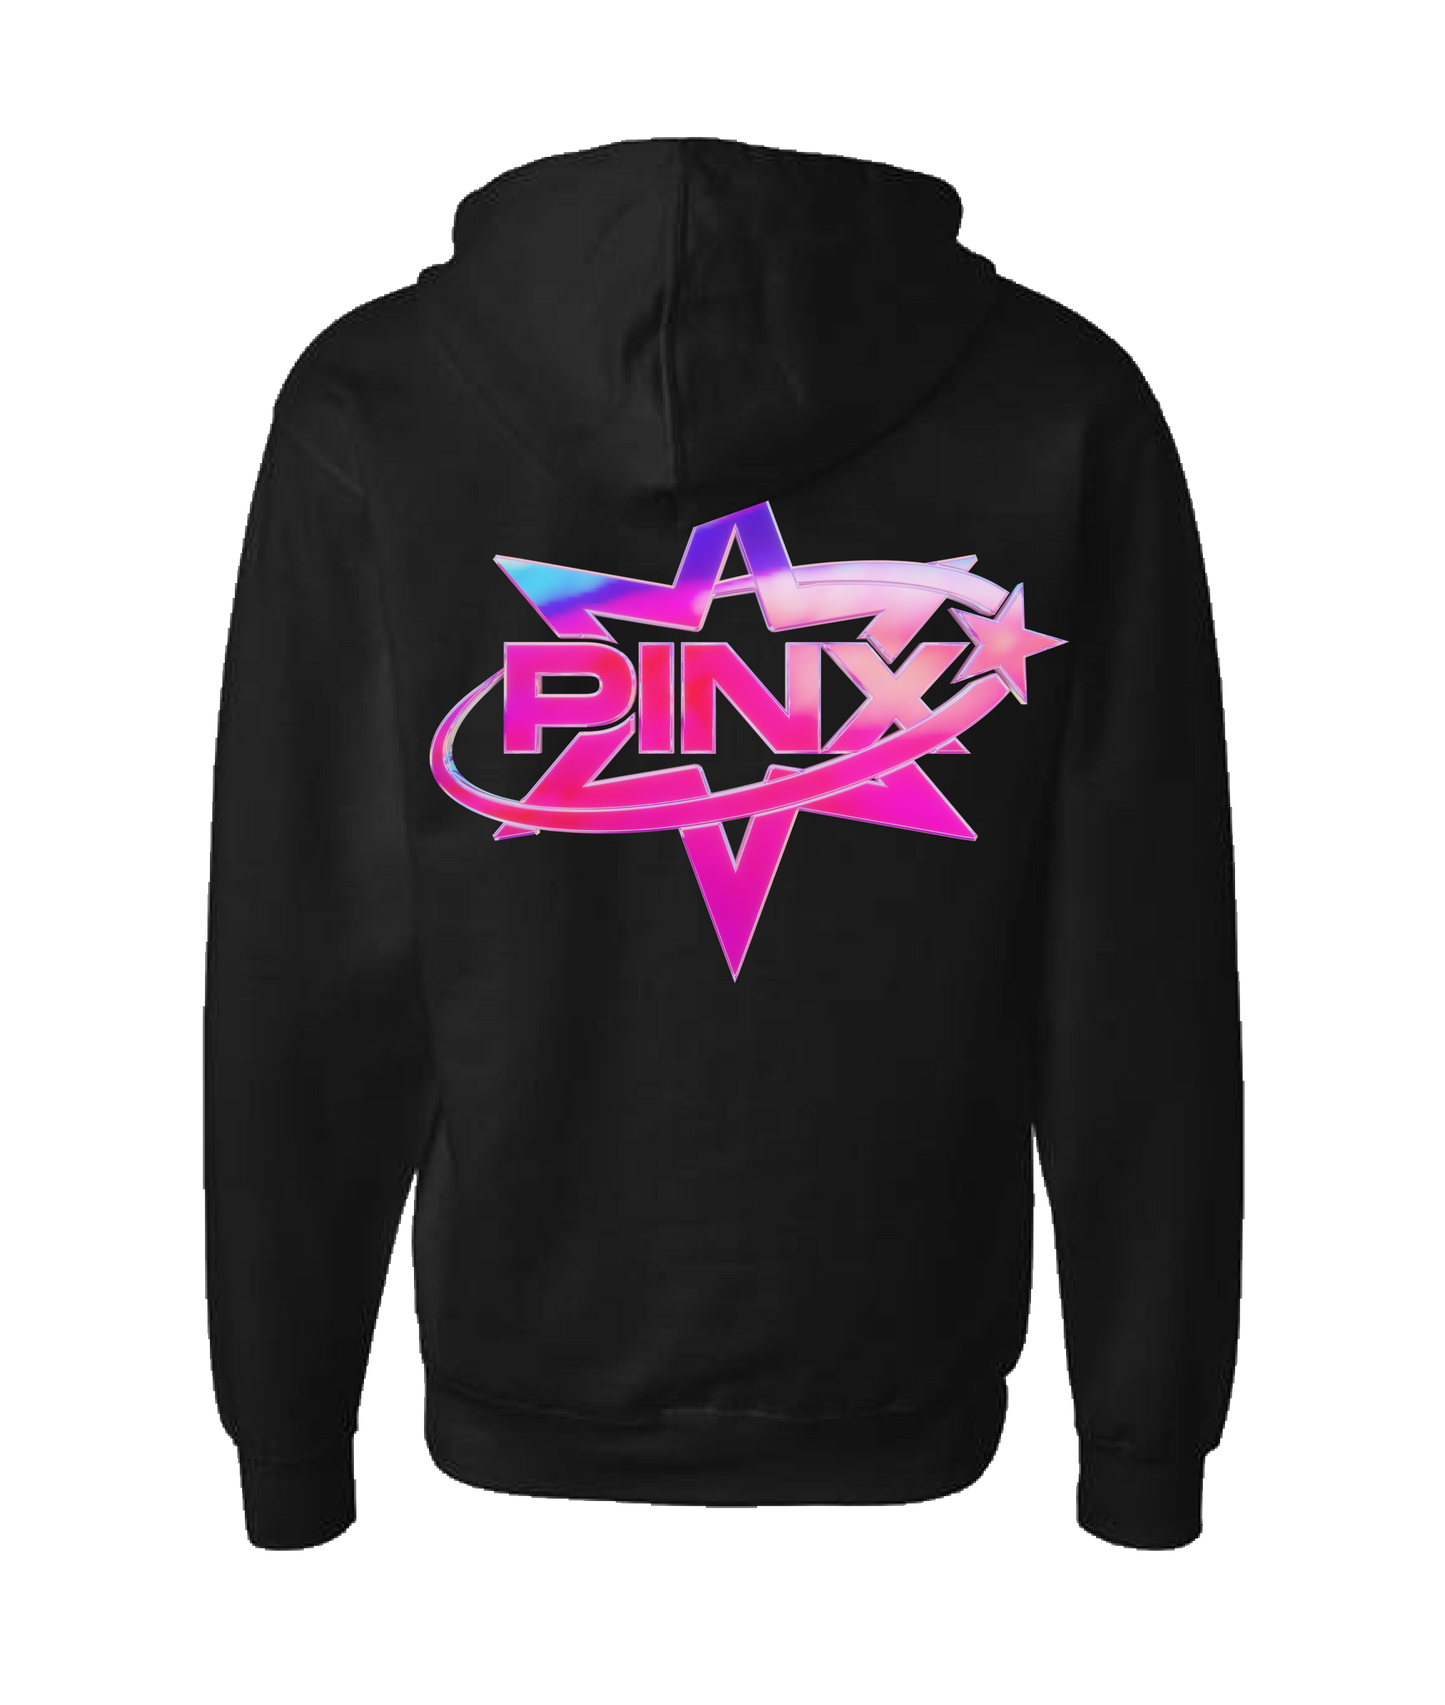 Pinx - Star Logo - Black Zip Up Hoodie